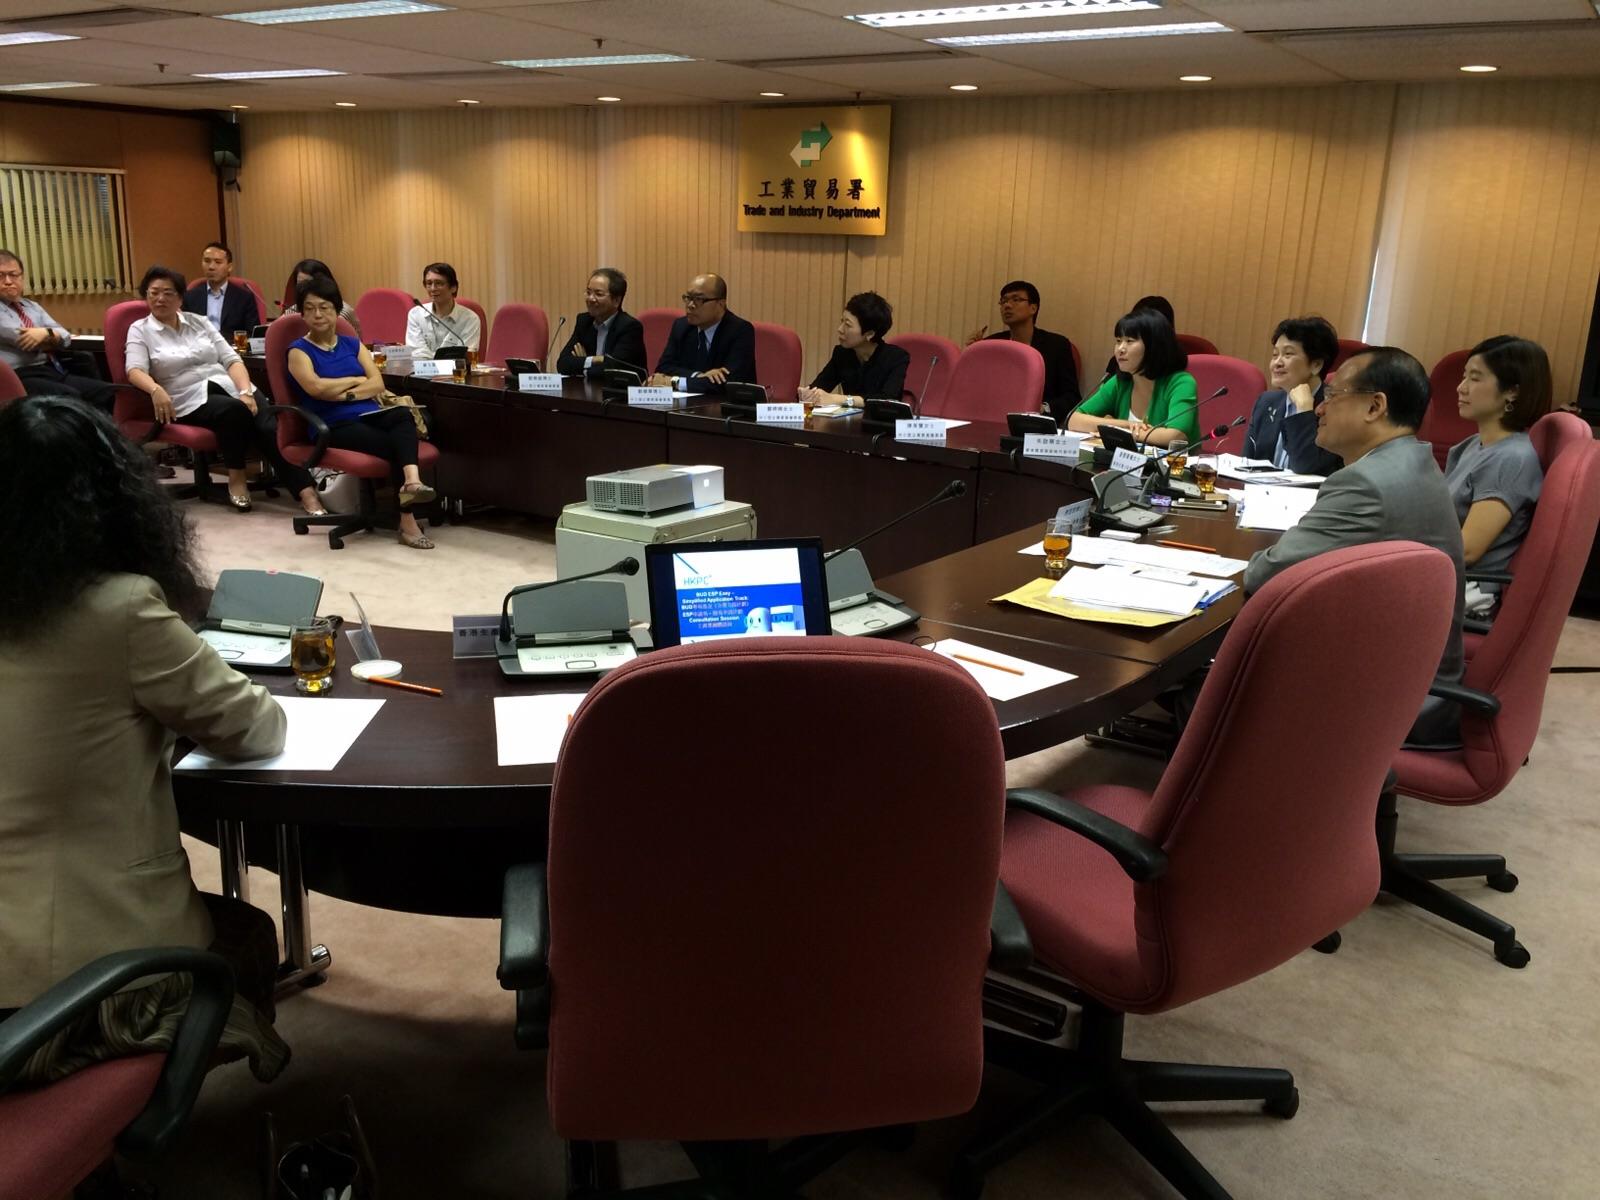 圖   片   12 : 中   小   型   企   業   委   員   會   於   2015 年   7 月   16 日   與   中   小   企   業   組   織   代   表   會   面   ，   就   「   香   港   中   小   企   業   在   發   展   電   子   商   貿   及   資   訊   科   技   在   應   用   上   所   需   的   支   援   」   交   流   意   見   。    中   小   型   企   業   委   員   會   其   後   把   會   面   的   意   見   撮   要   提   交   與   政   府   有   關   部   門   參   考   。   